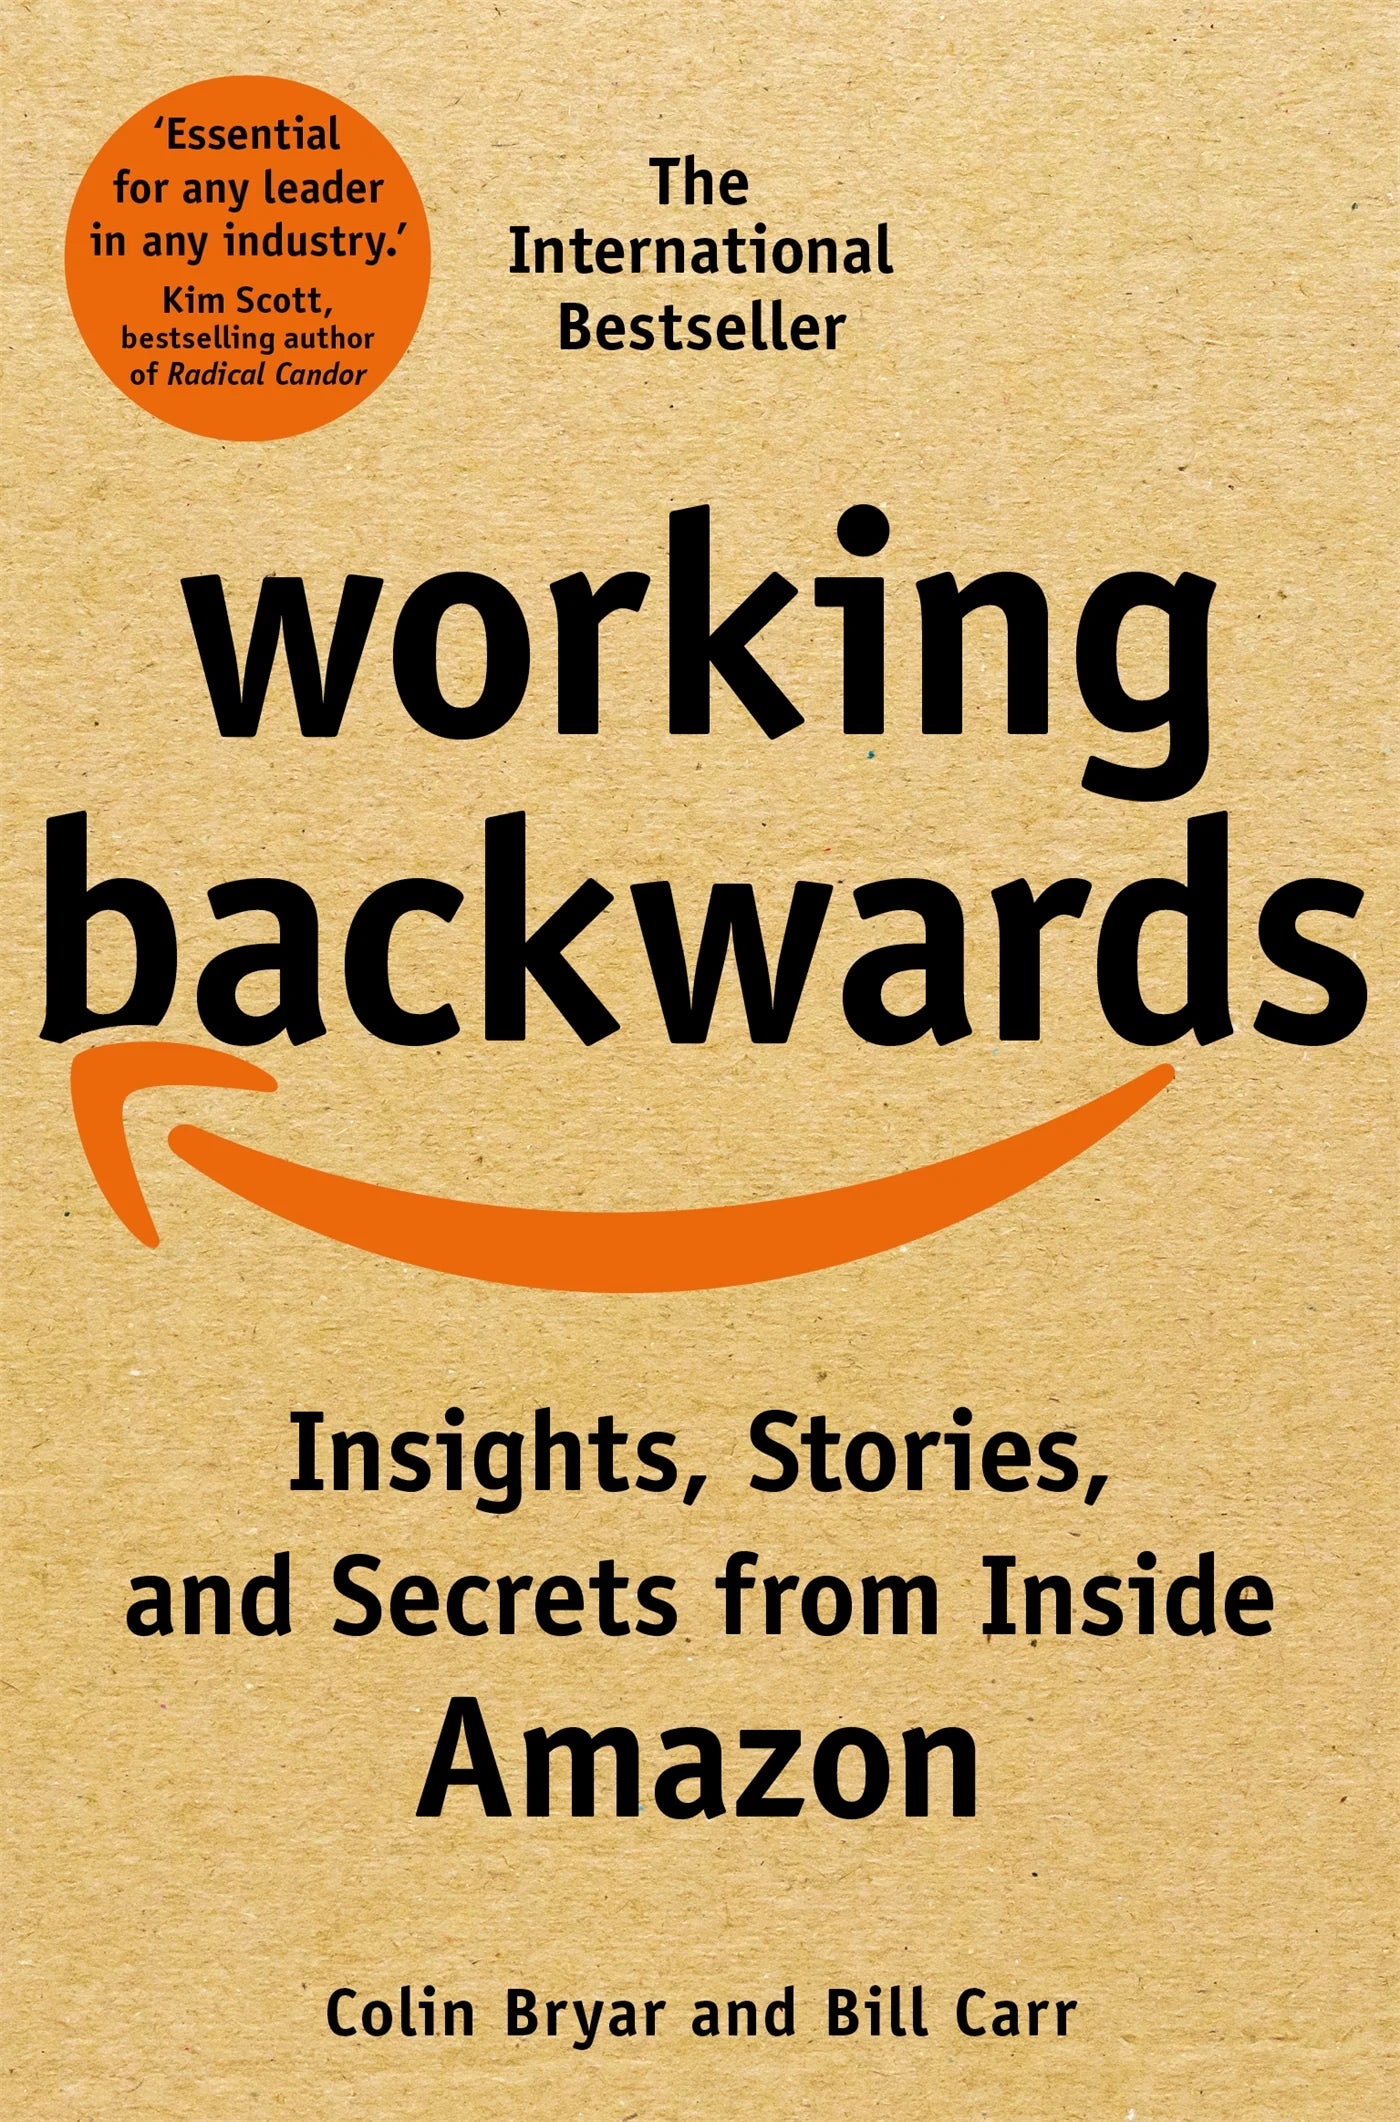 Working Backwards by Colin Bryar & Bill Carr